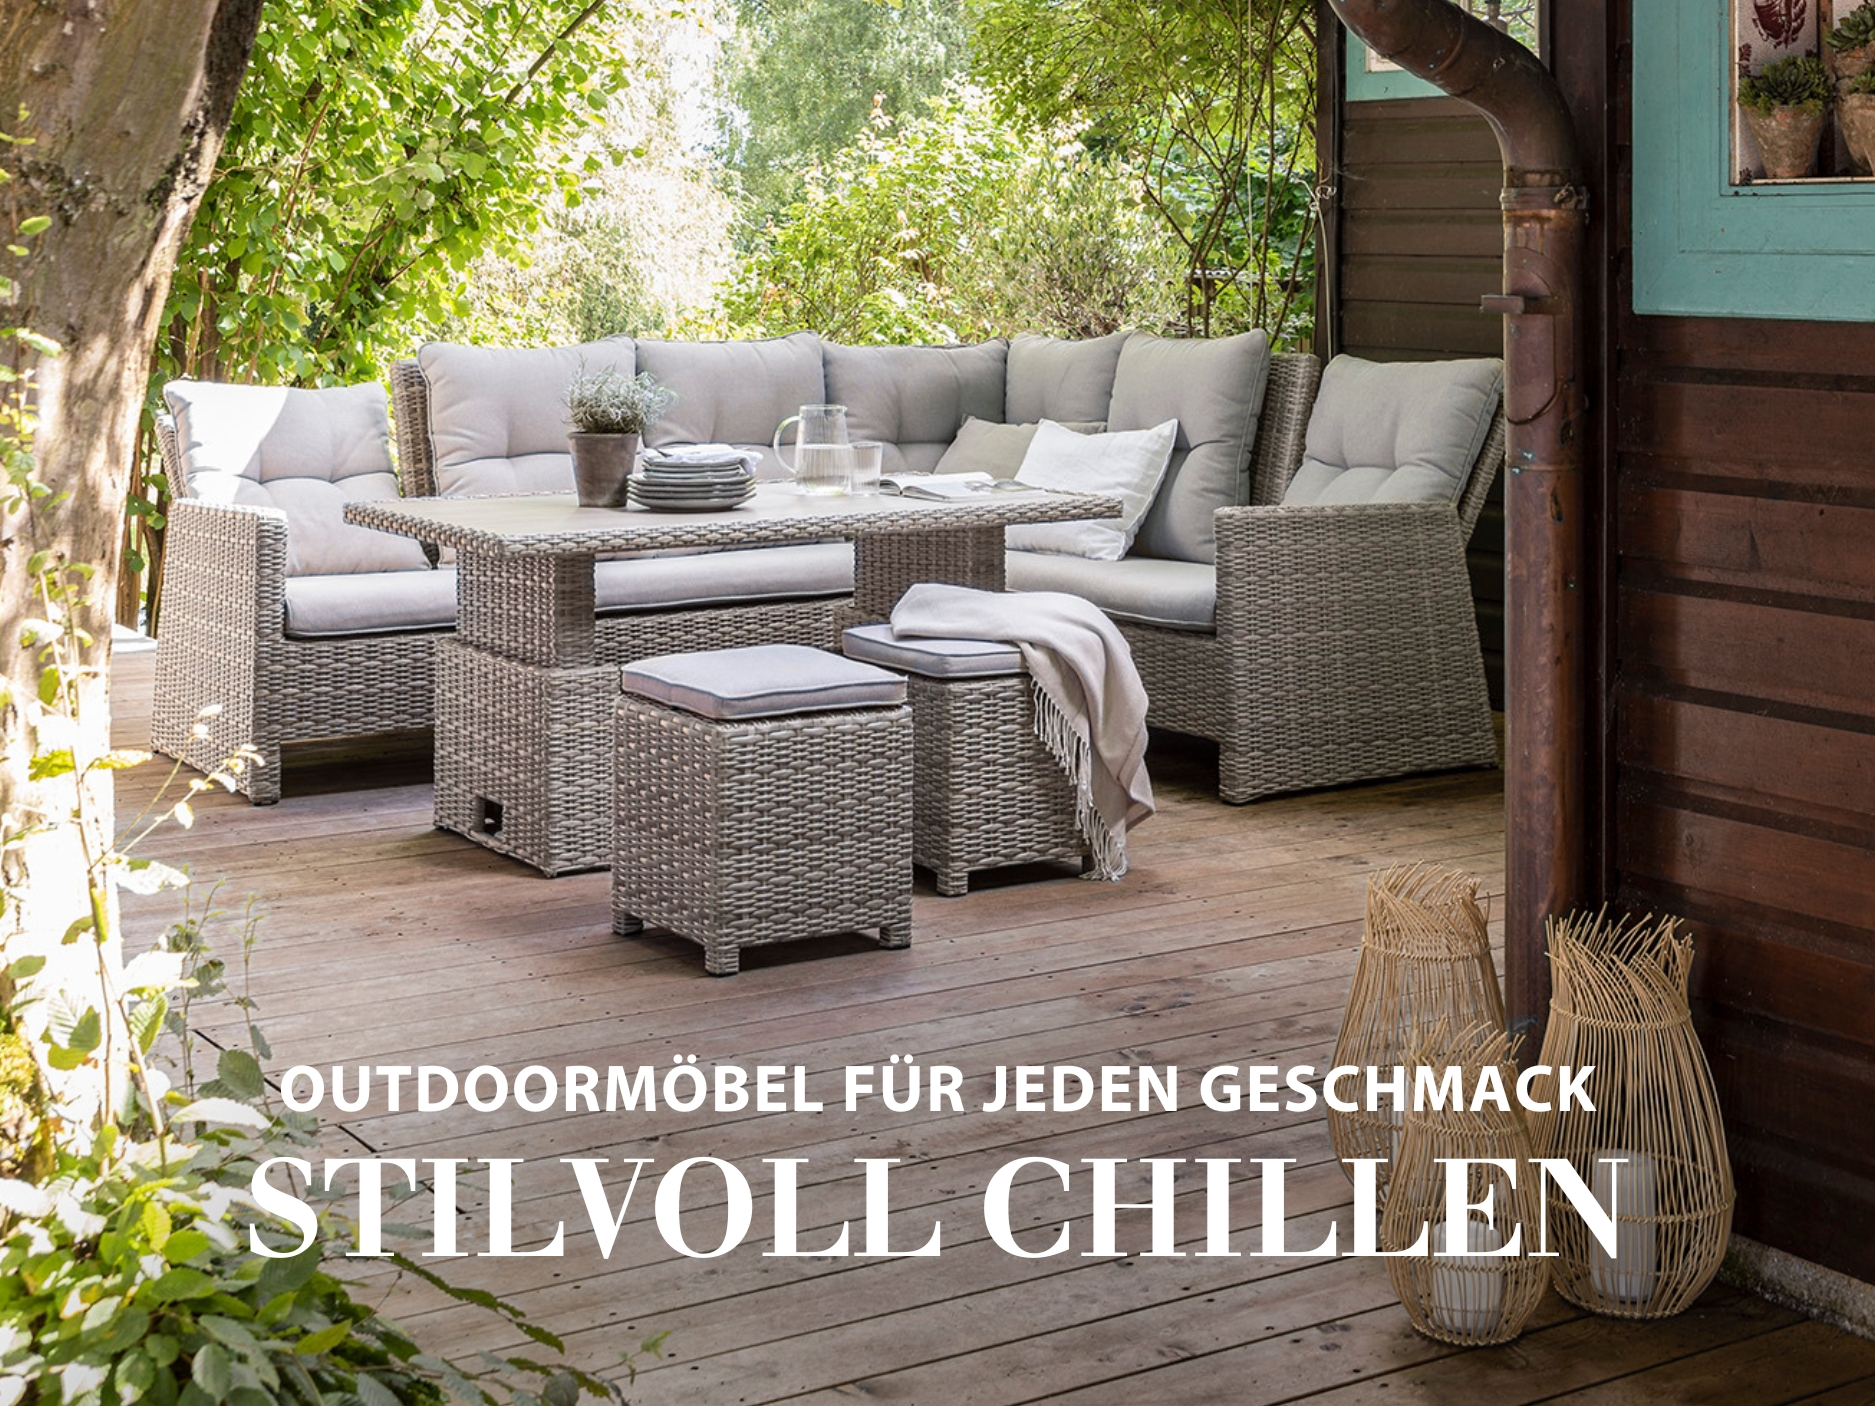 Stilvoll chillen - Outdoor-Möbel für jeden Geschmack